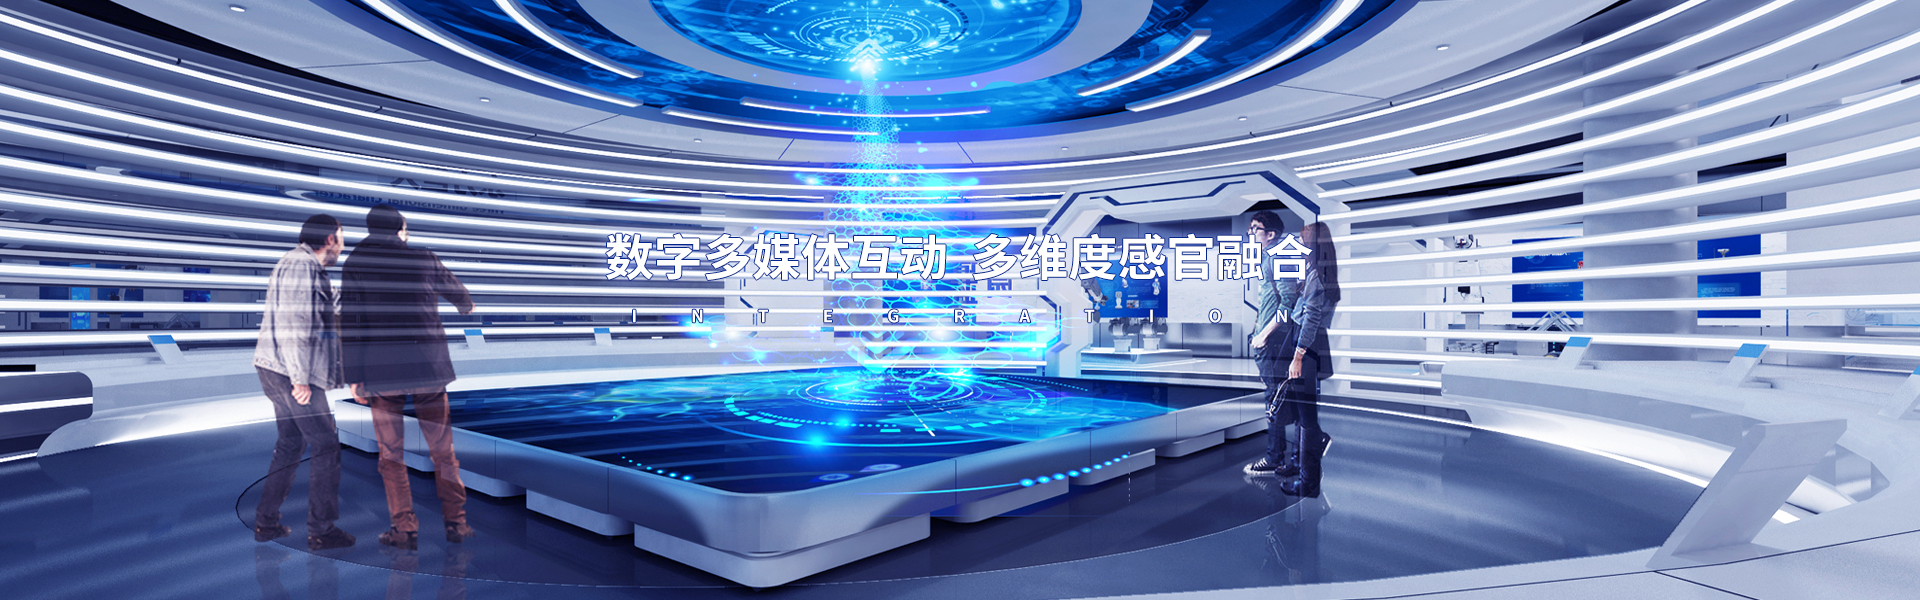 多媒体互动软件_广州聚辉电子有限公司